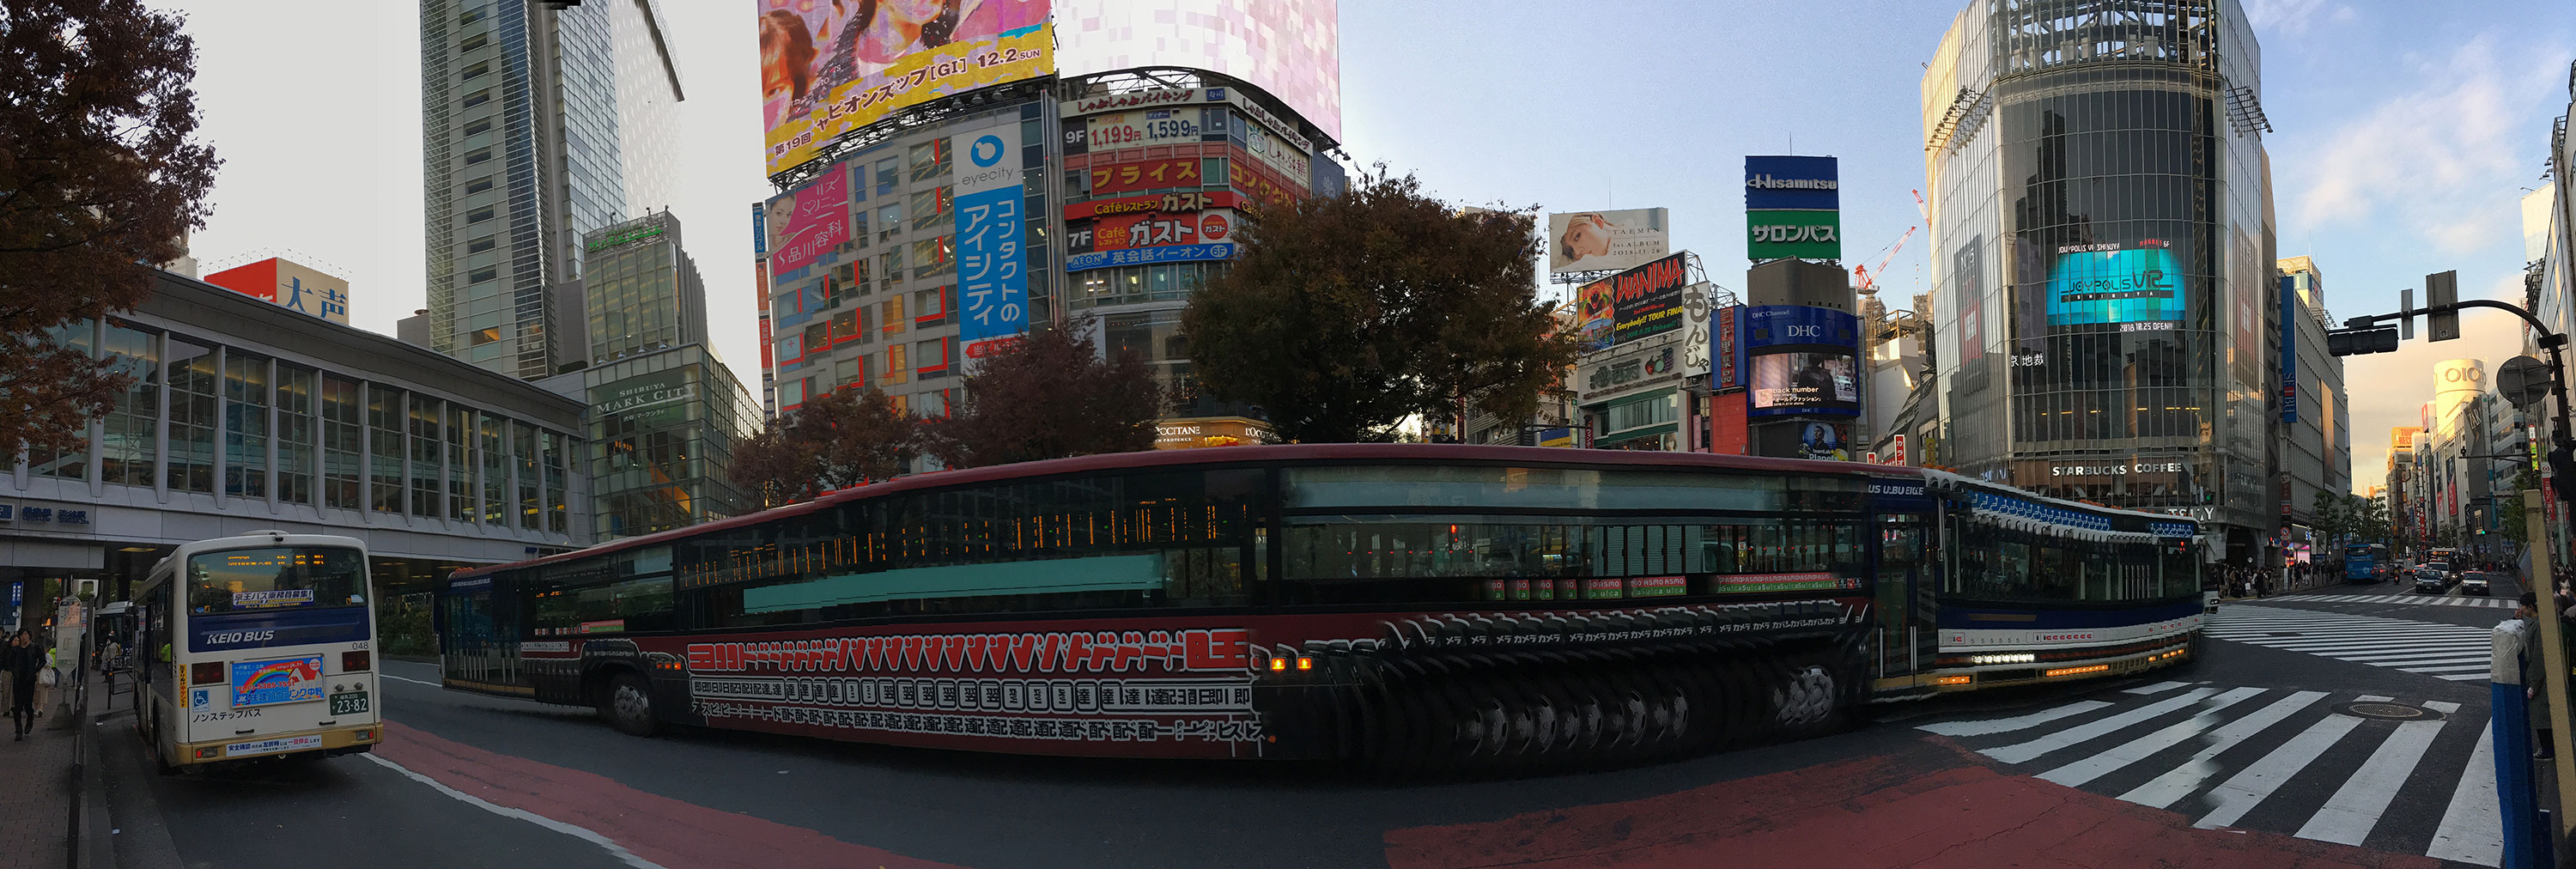 Scamorphose iPhone2 Shibuya